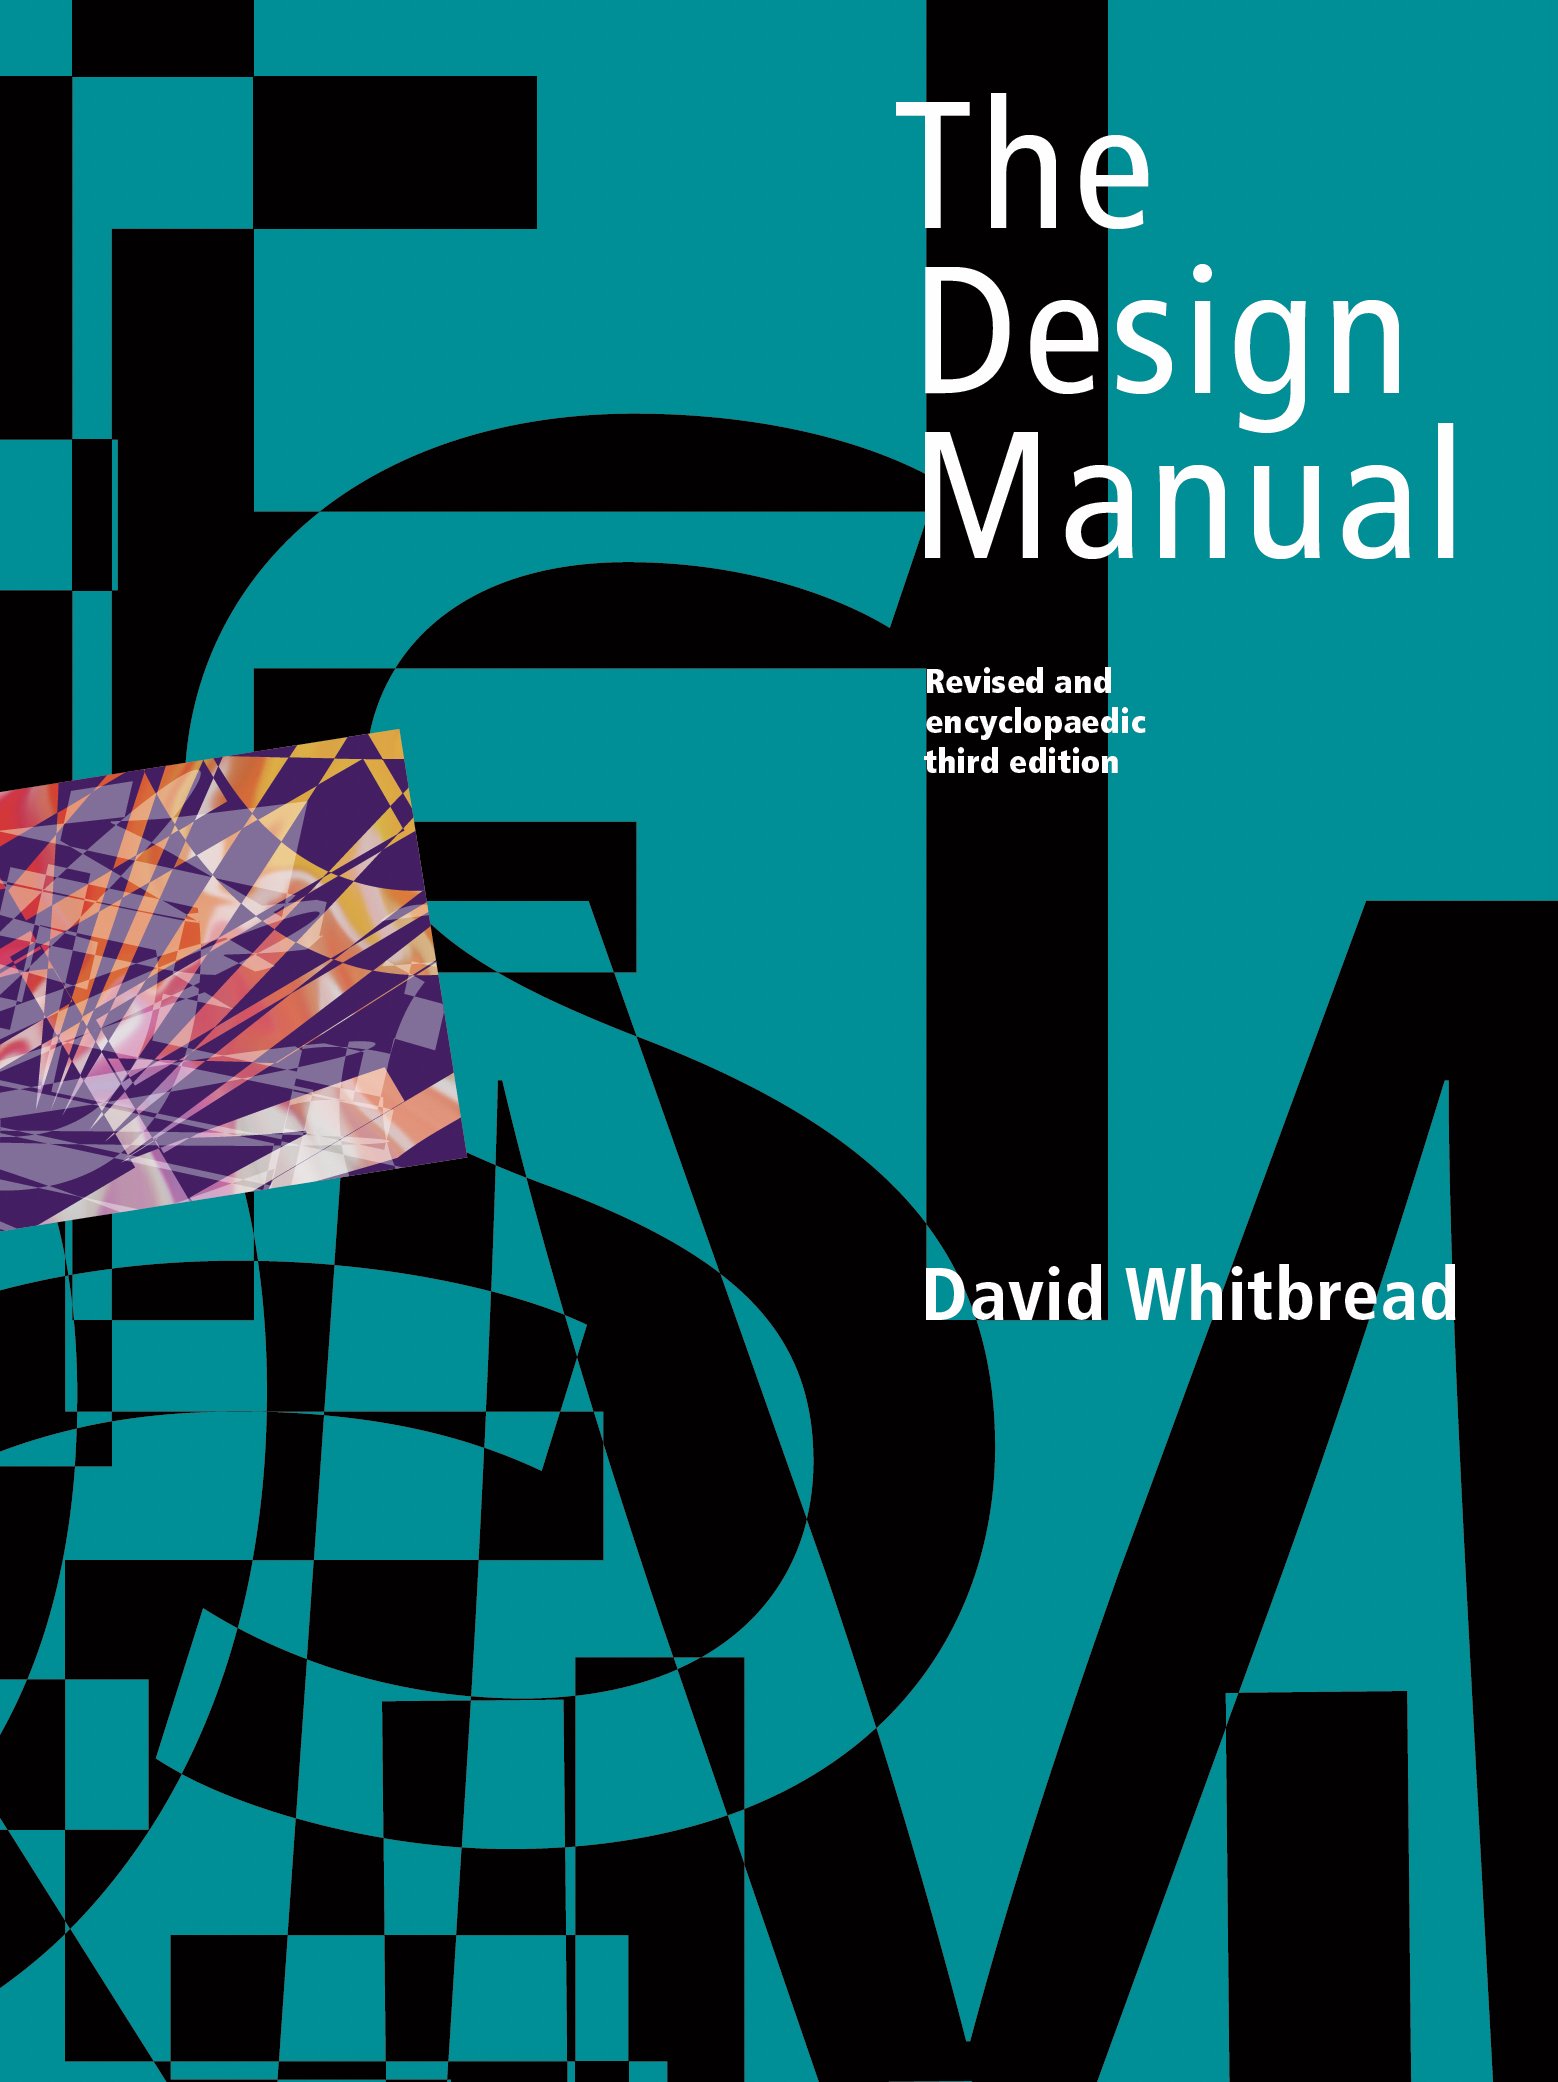 The Design Manual.jpg